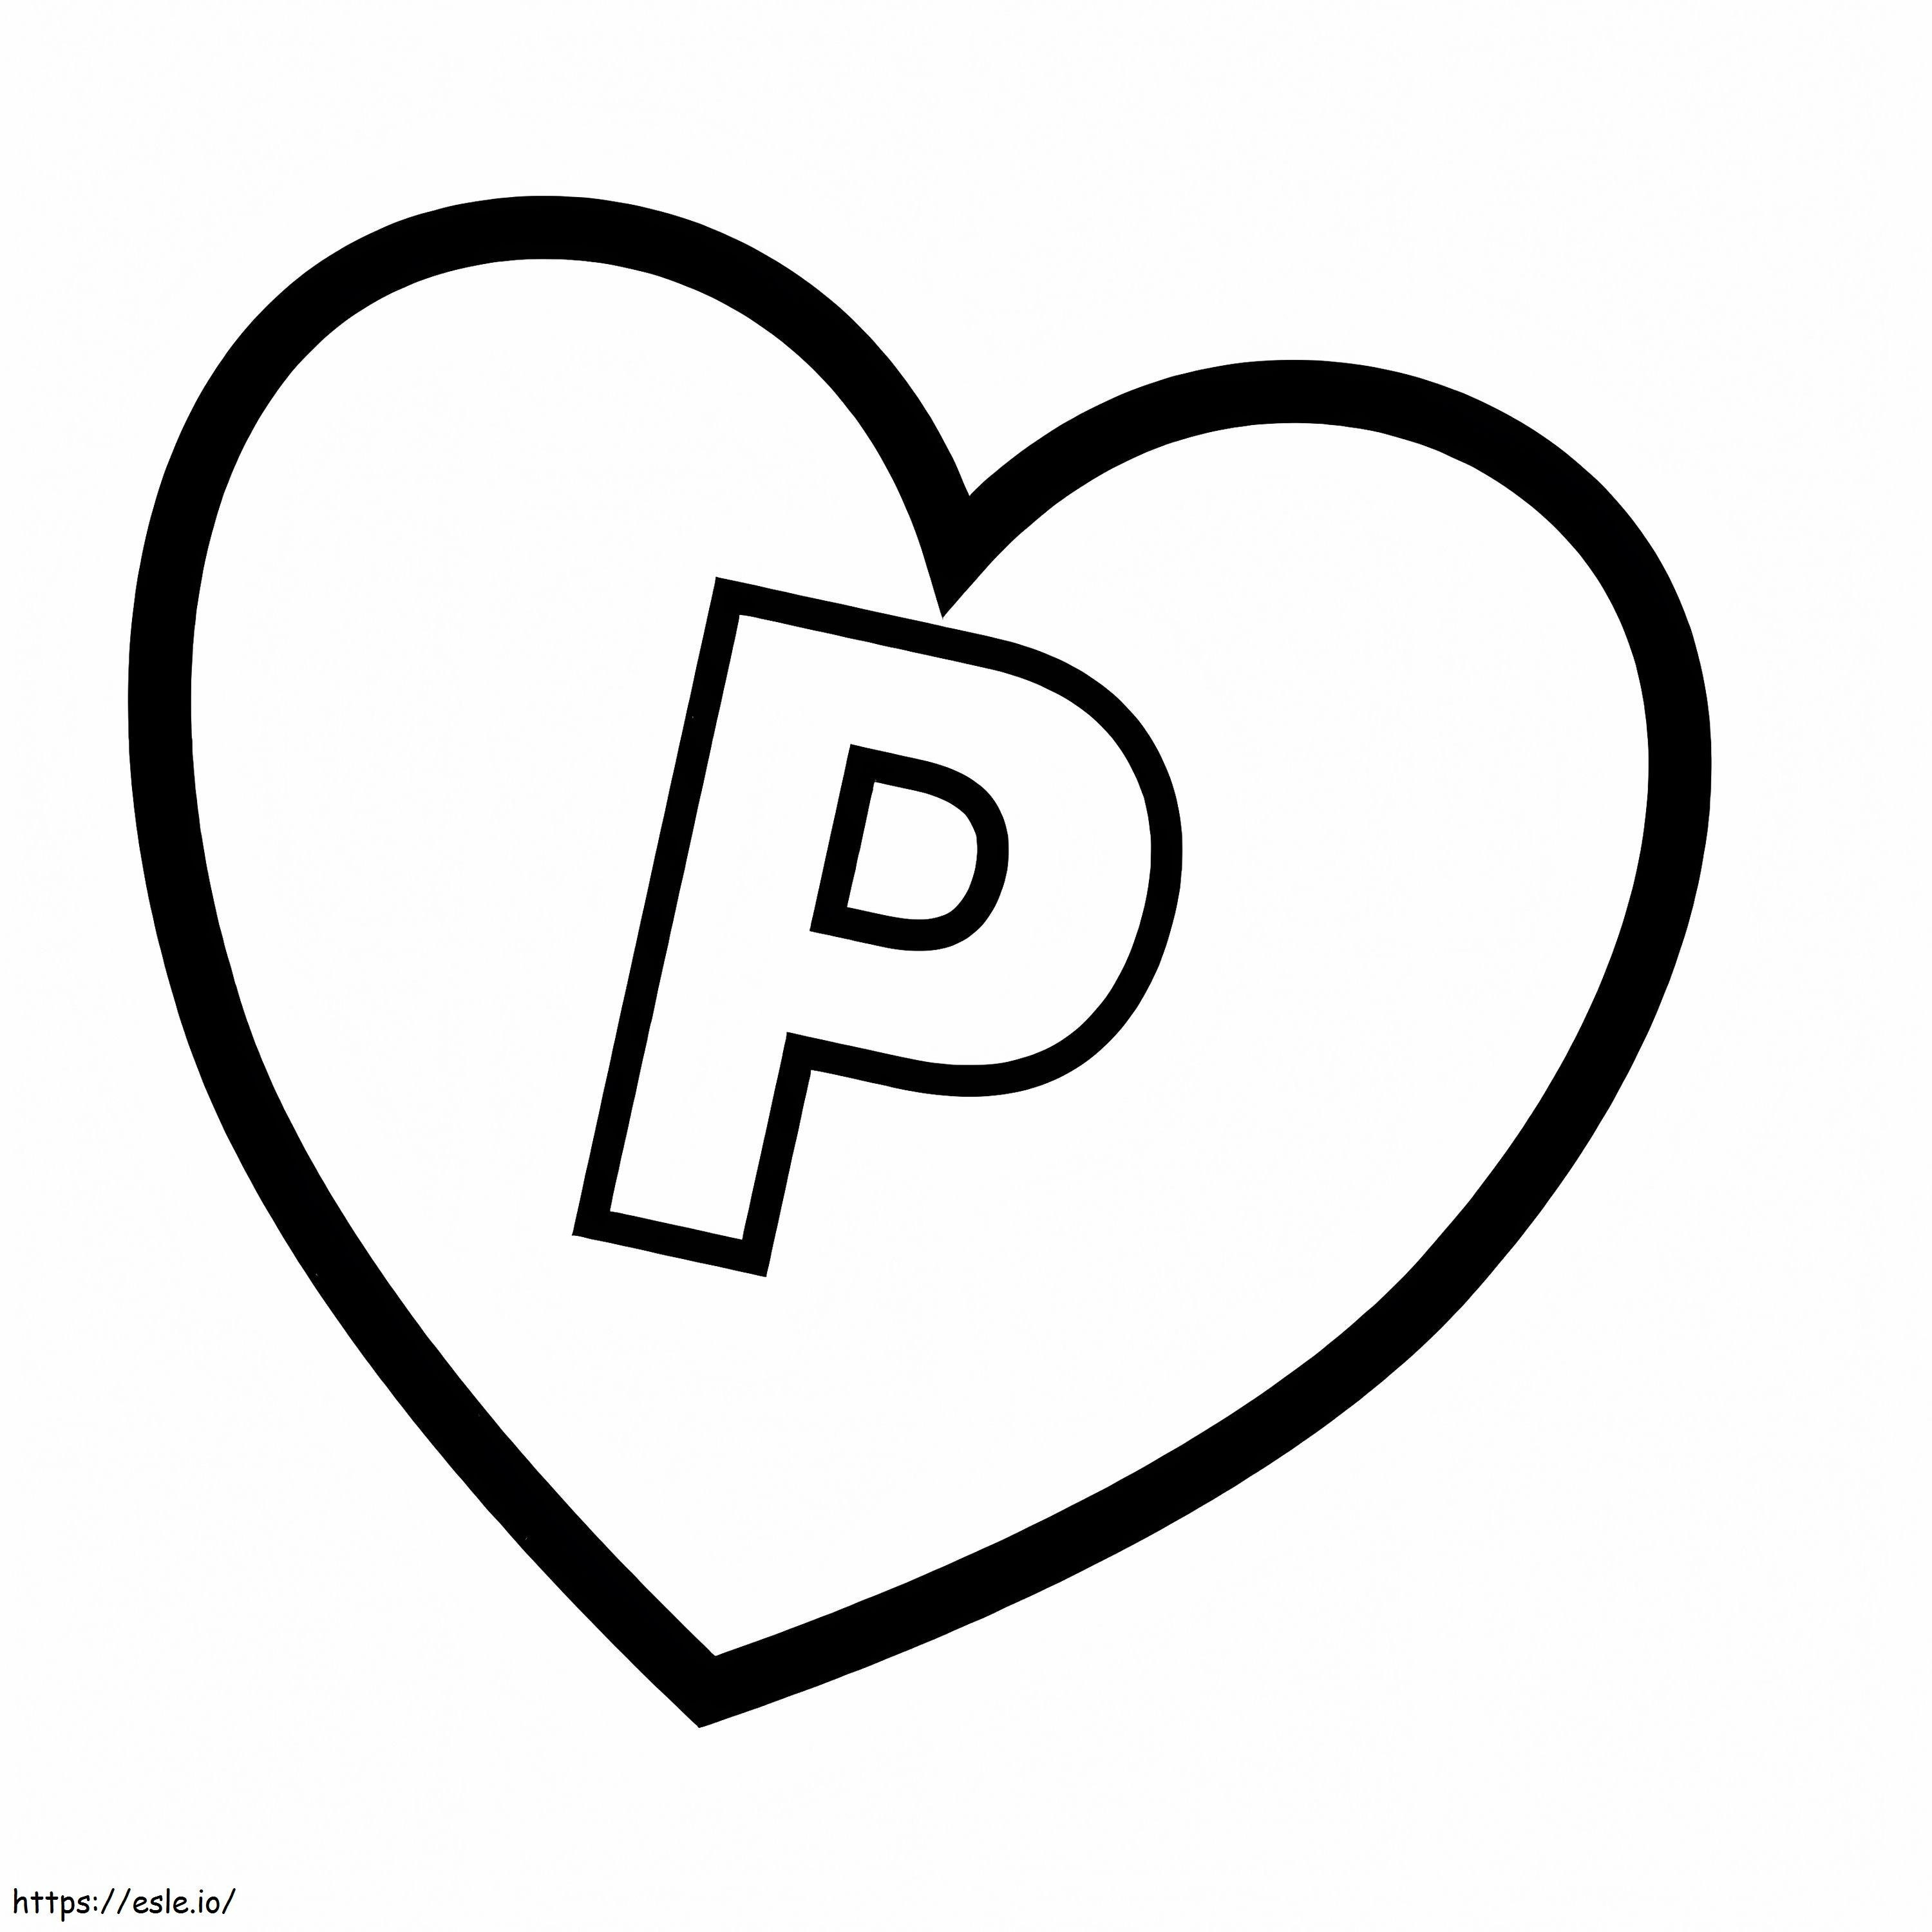 Litera P în inimă de colorat